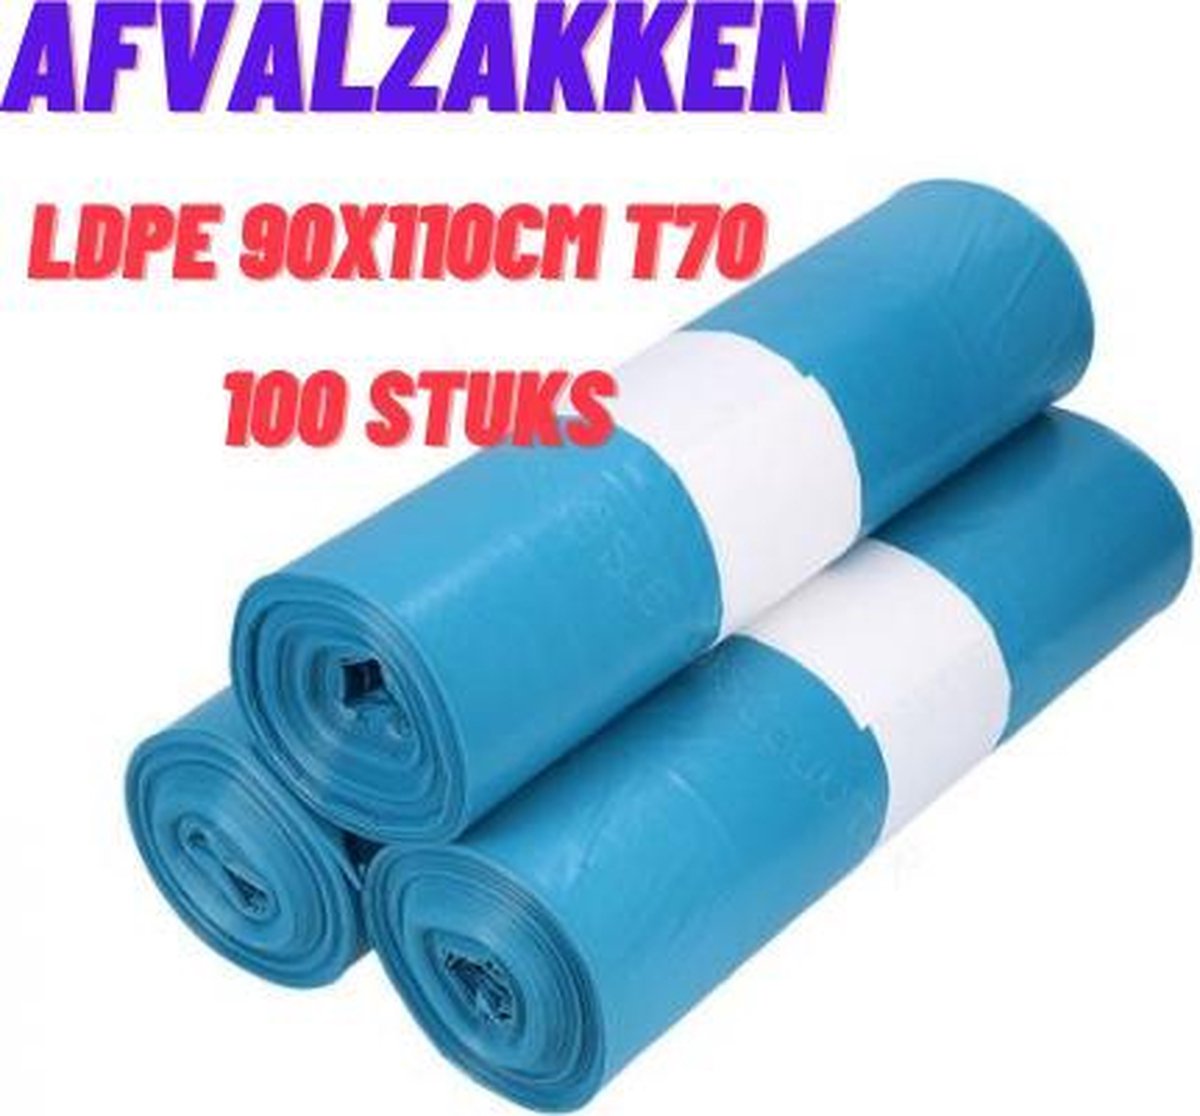 Vuilniszakken/Afvalzakken LDPE 90x110cm T70 blauw 140 liter Prullenbak zakken 100stuks